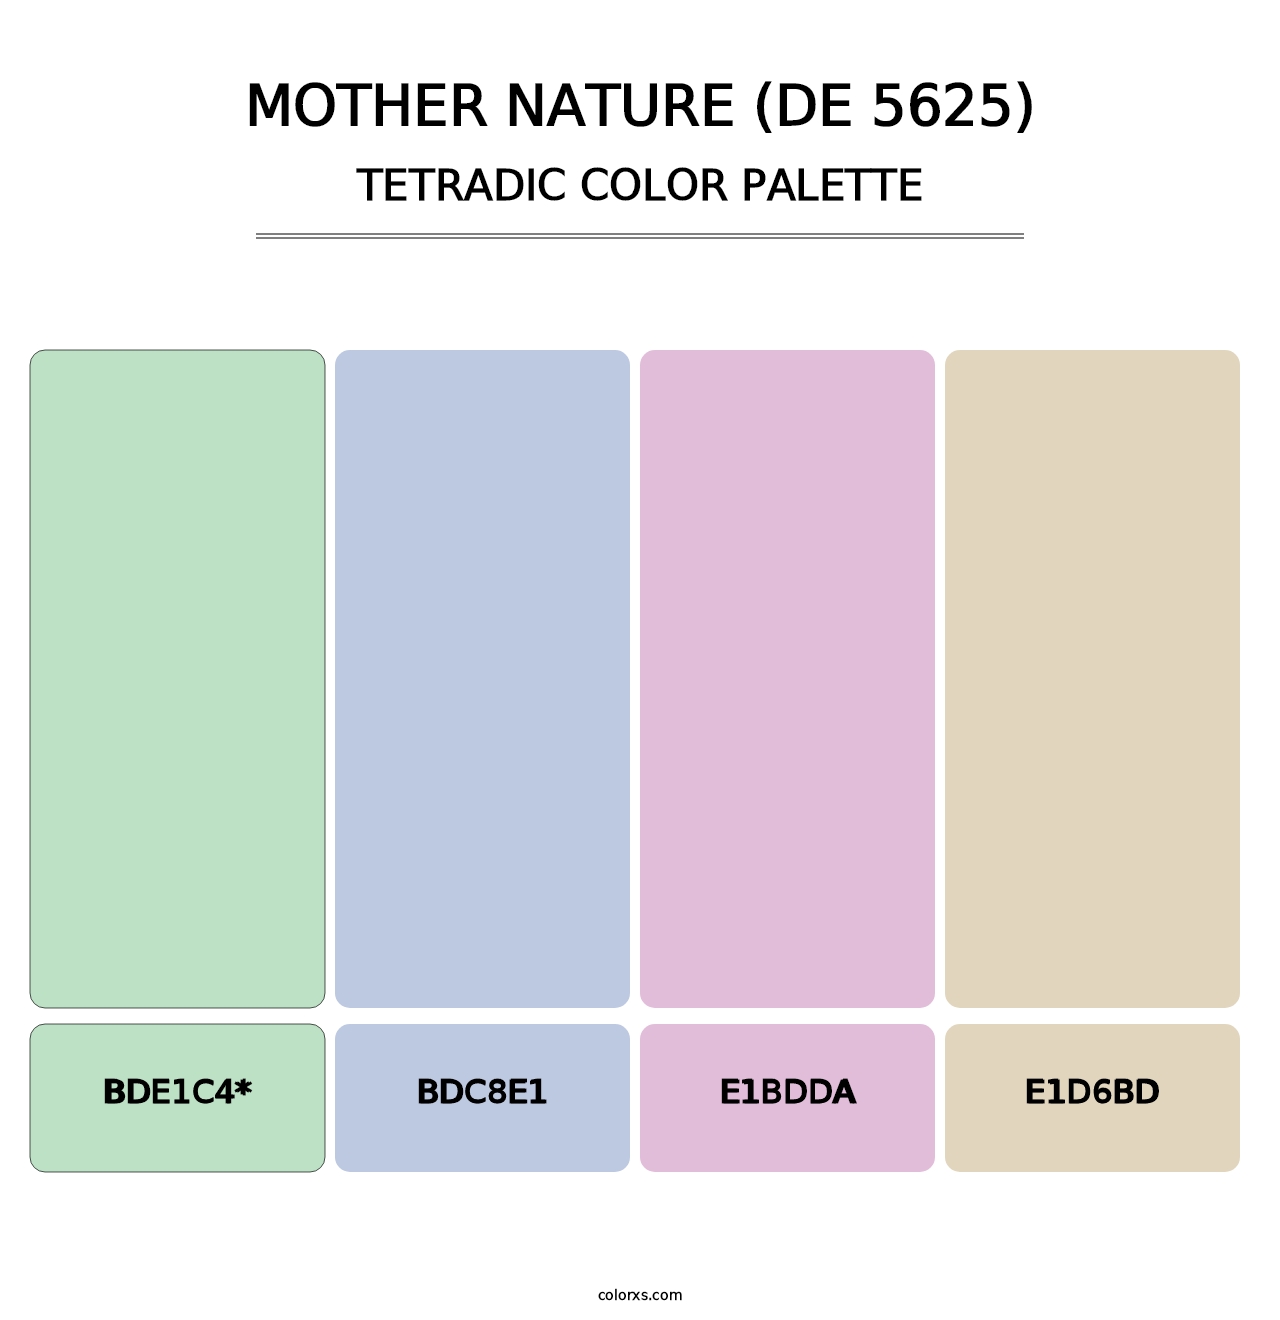 Mother Nature (DE 5625) - Tetradic Color Palette